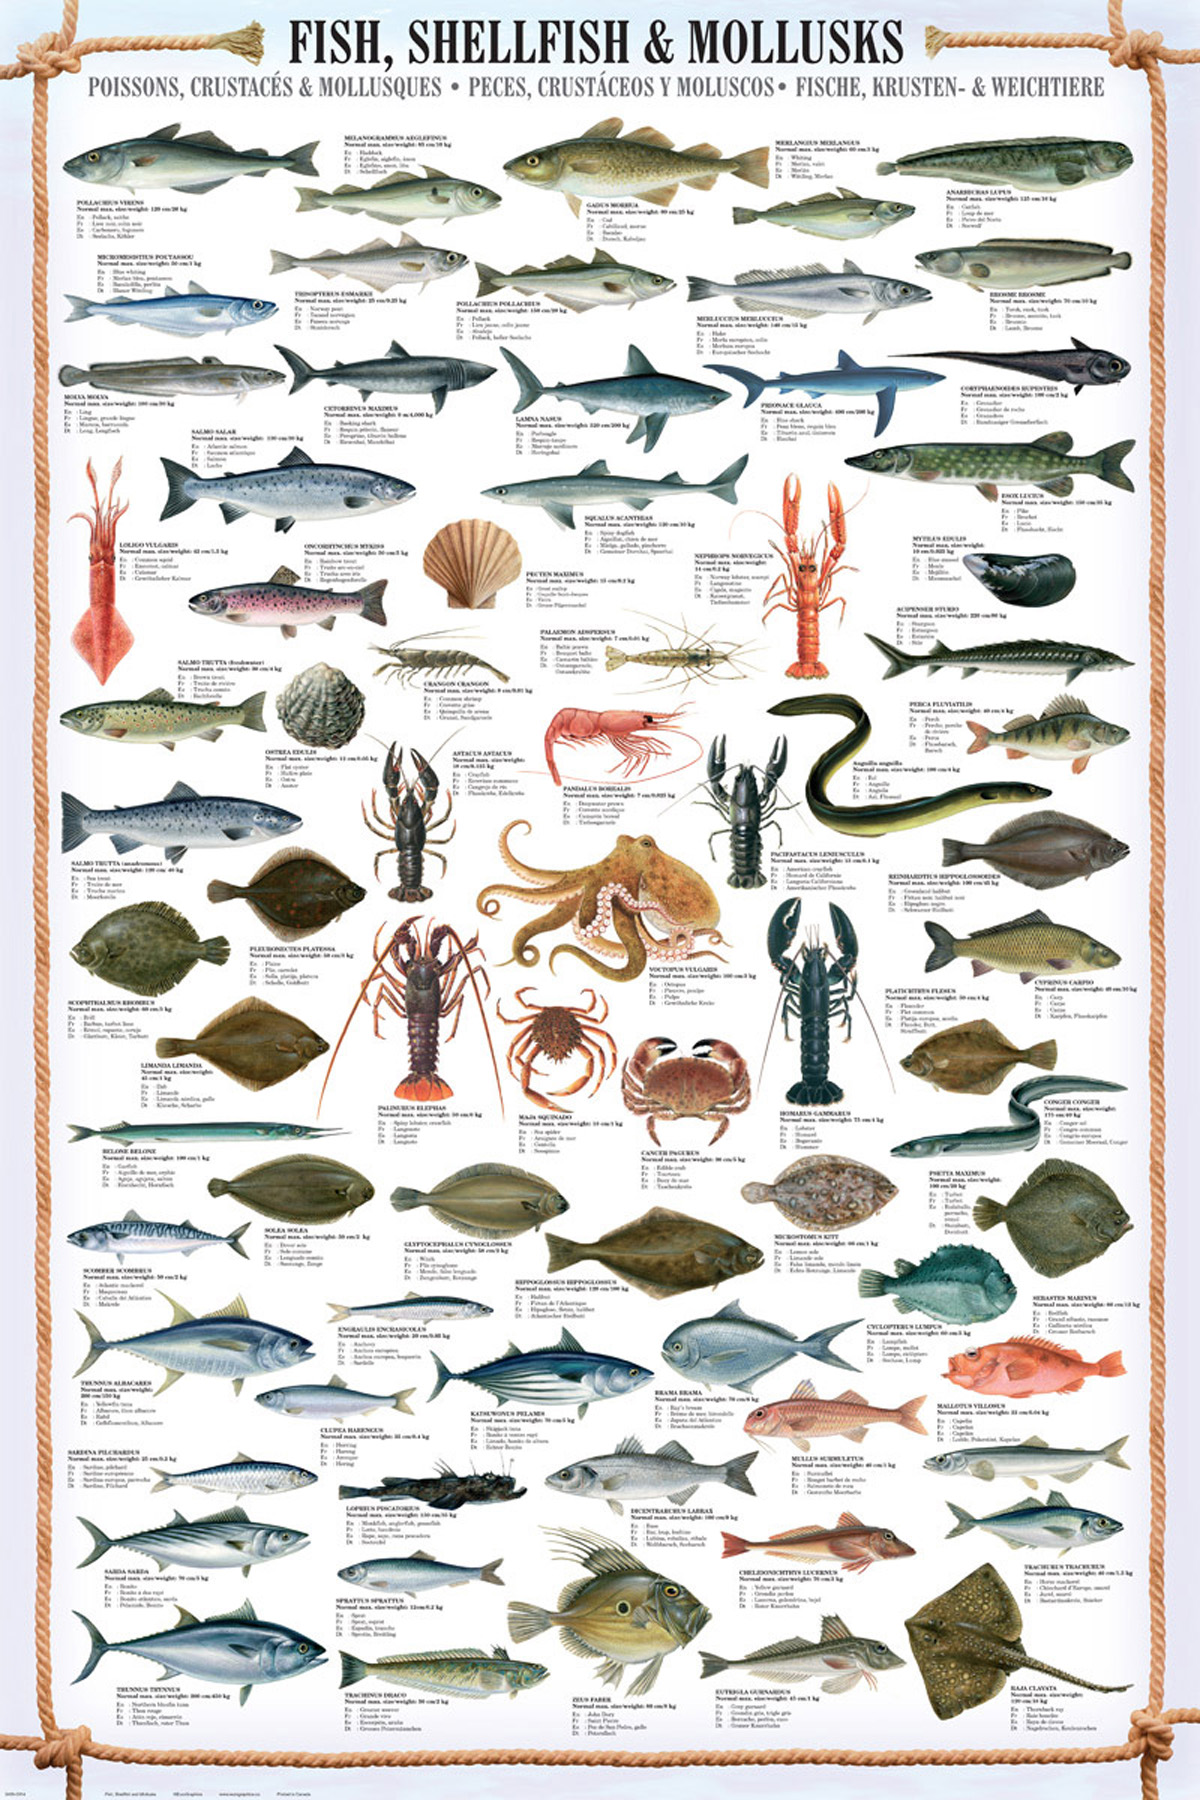 Educational Fish, - Mollusks & Bildung Shellfish -